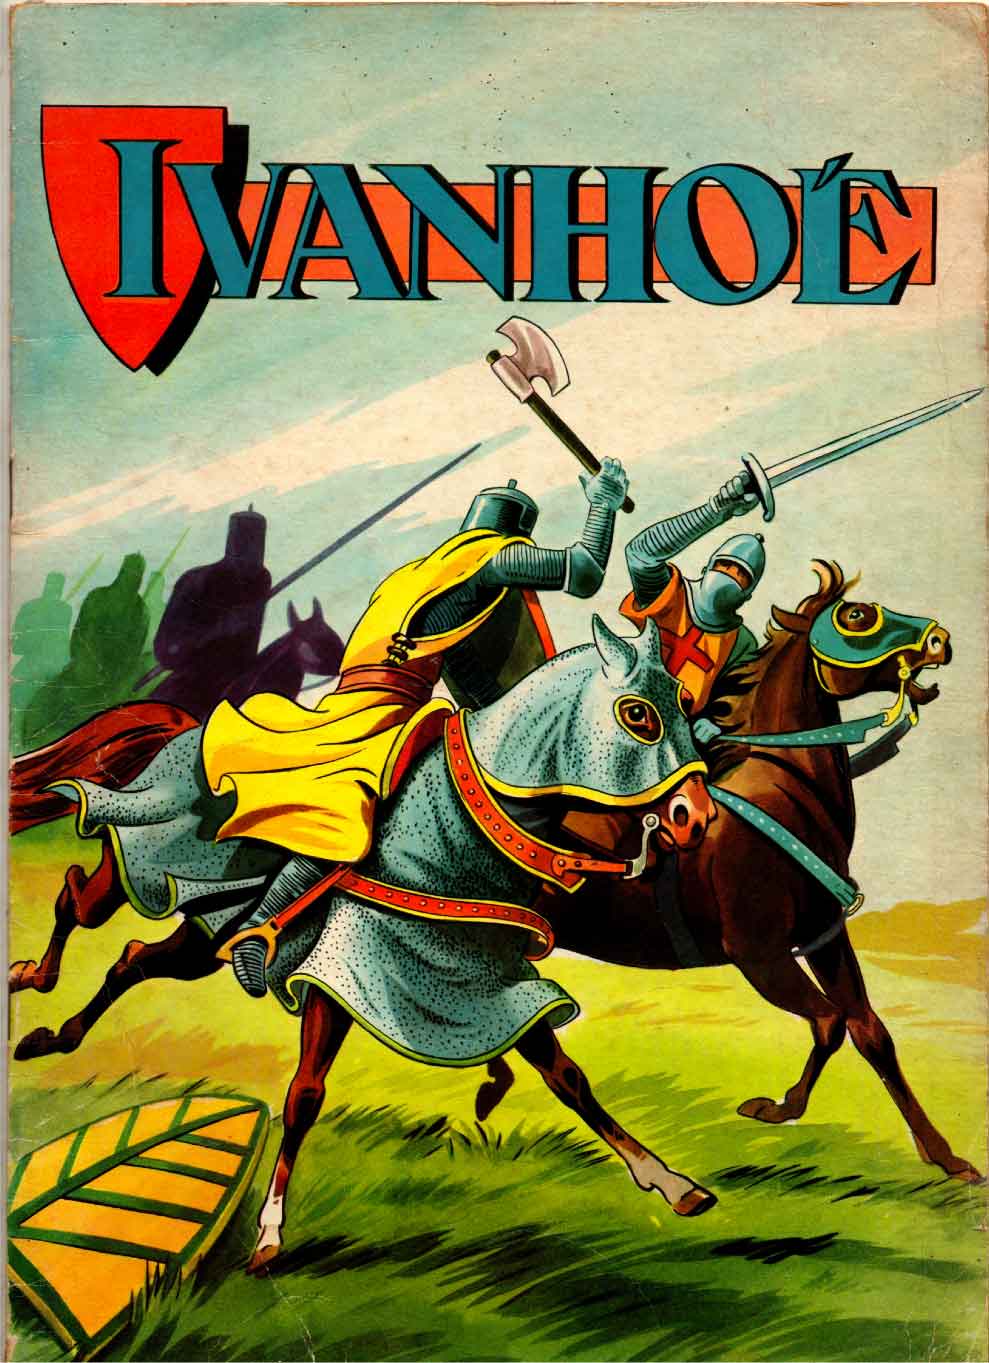 Couverture d'« Ivanhoé » par André Oulié aux éditions Chaix (1957).